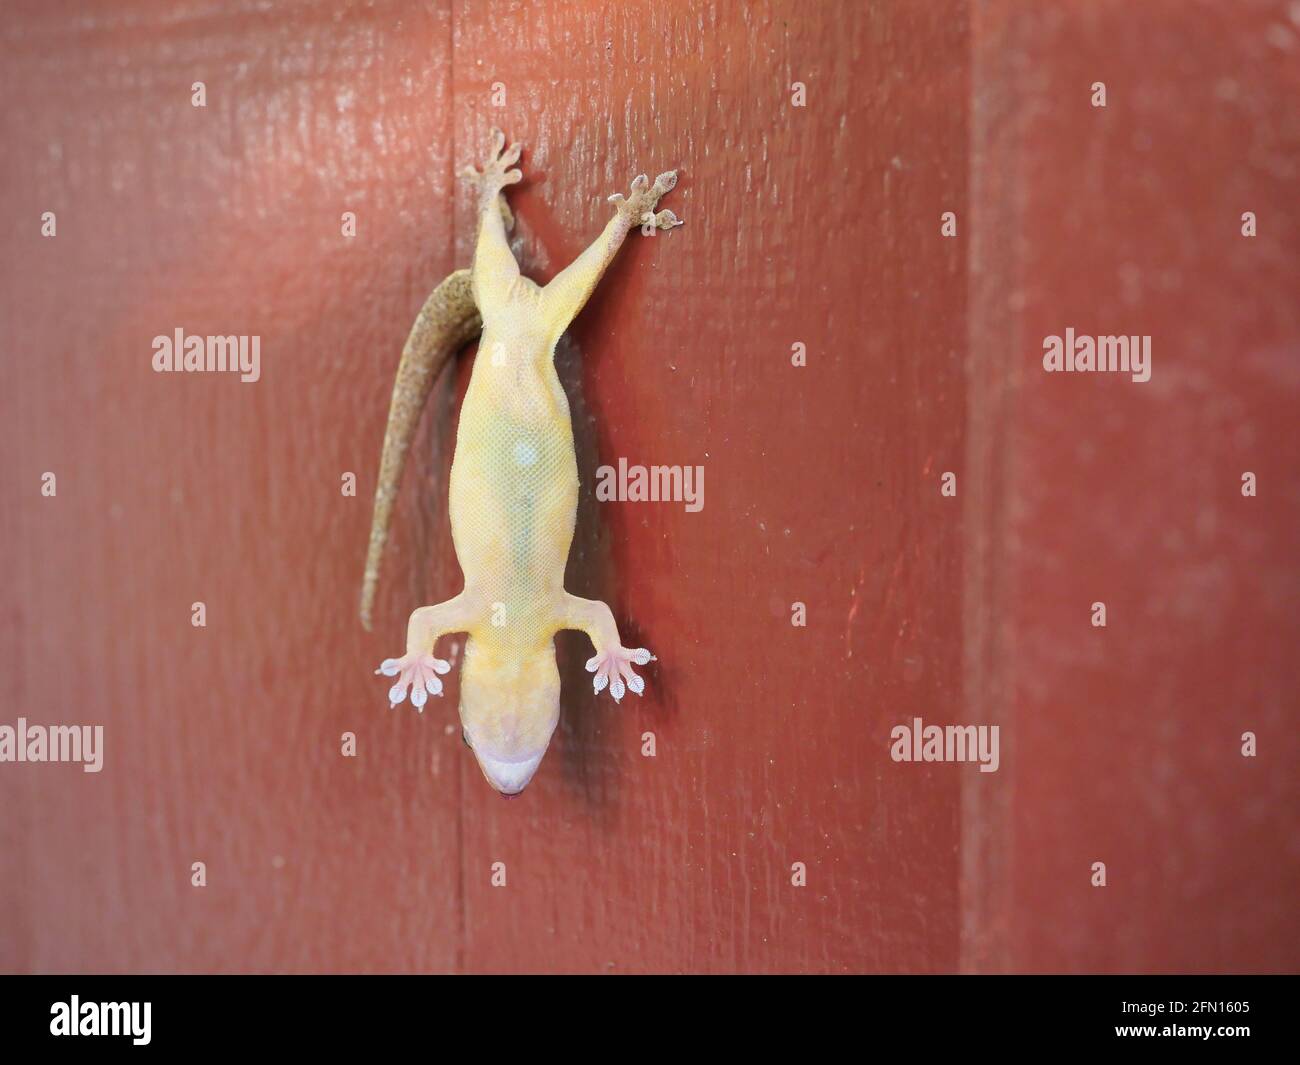 Gewöhnlicher Hausgecko ( H. platyurus ) starb, während seine Hinterfüße an der roten Wand anhängten und an der Tür Eidechsenkarkasse aufhängten Stockfoto